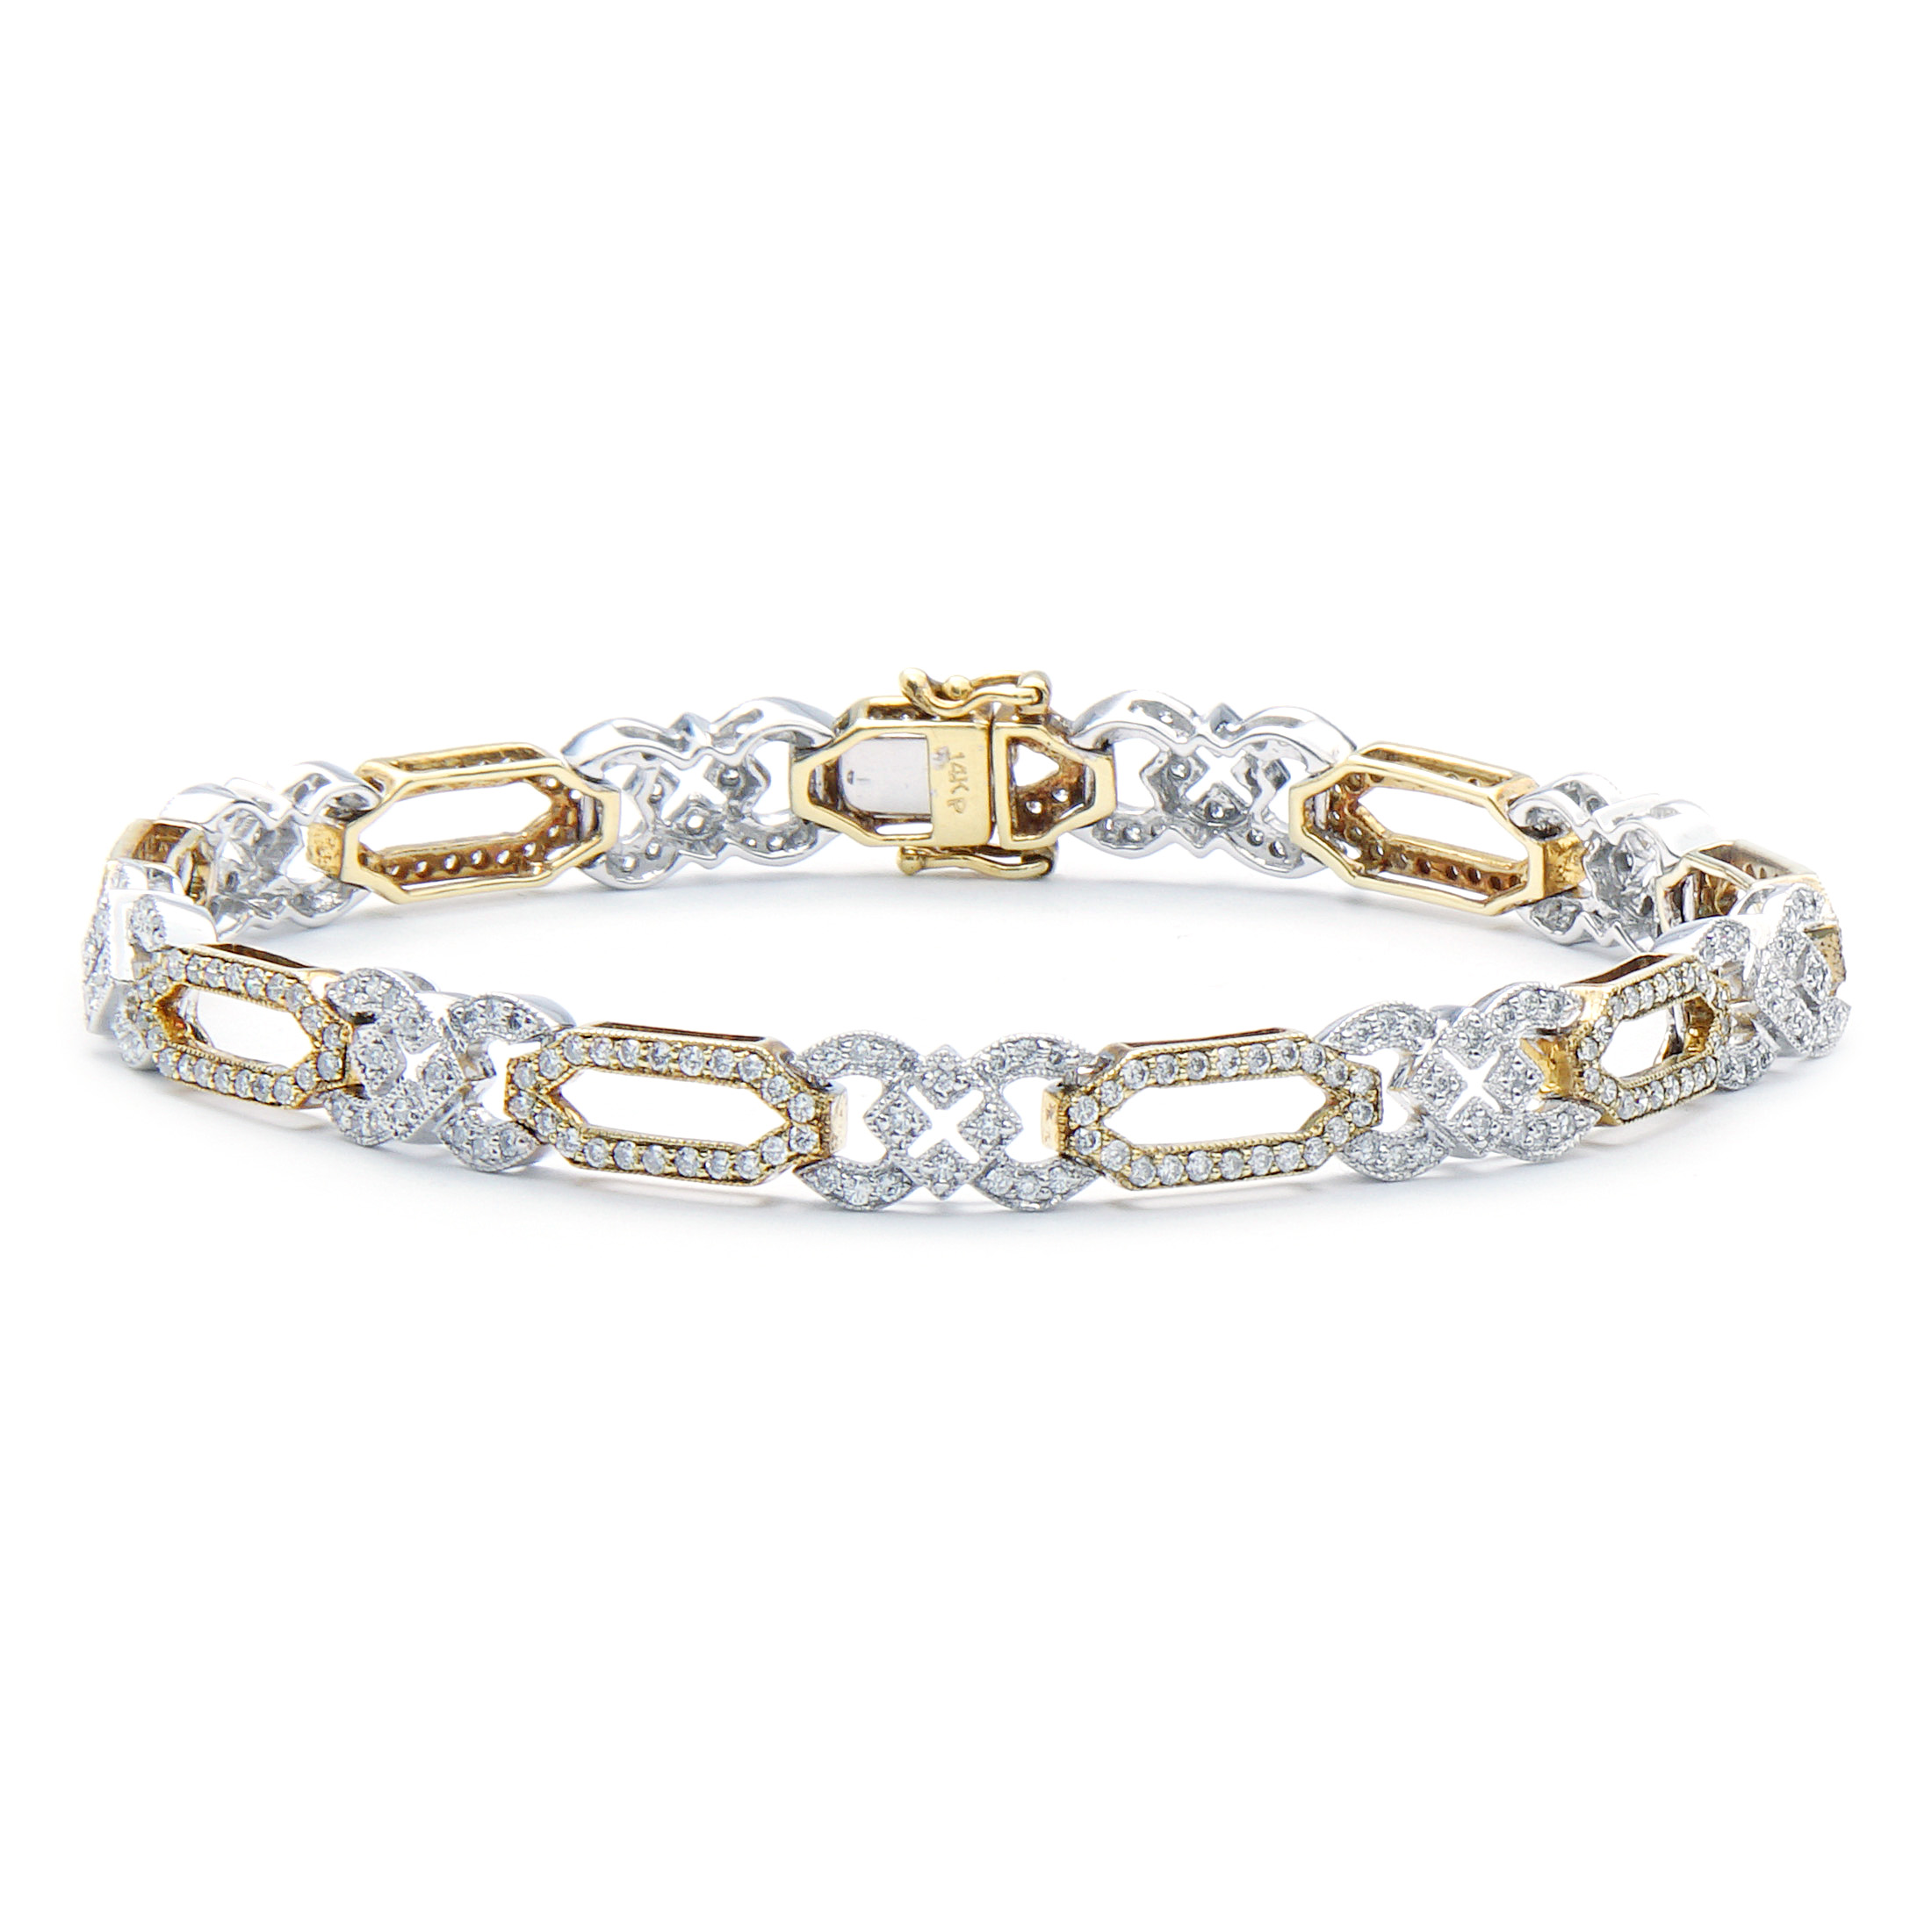 Fancy Link Diamond Bracelet | New York Jewelers Chicago